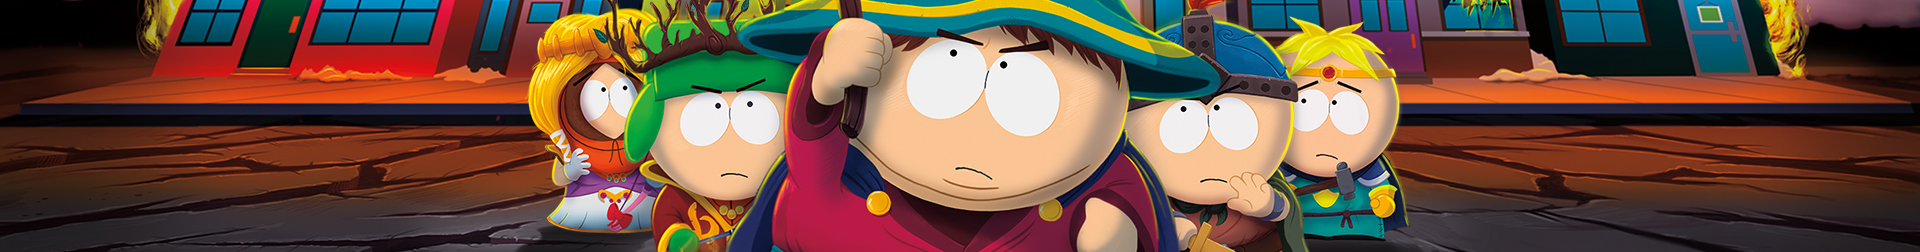 South Park - Der Stab der Wahrheit Banner